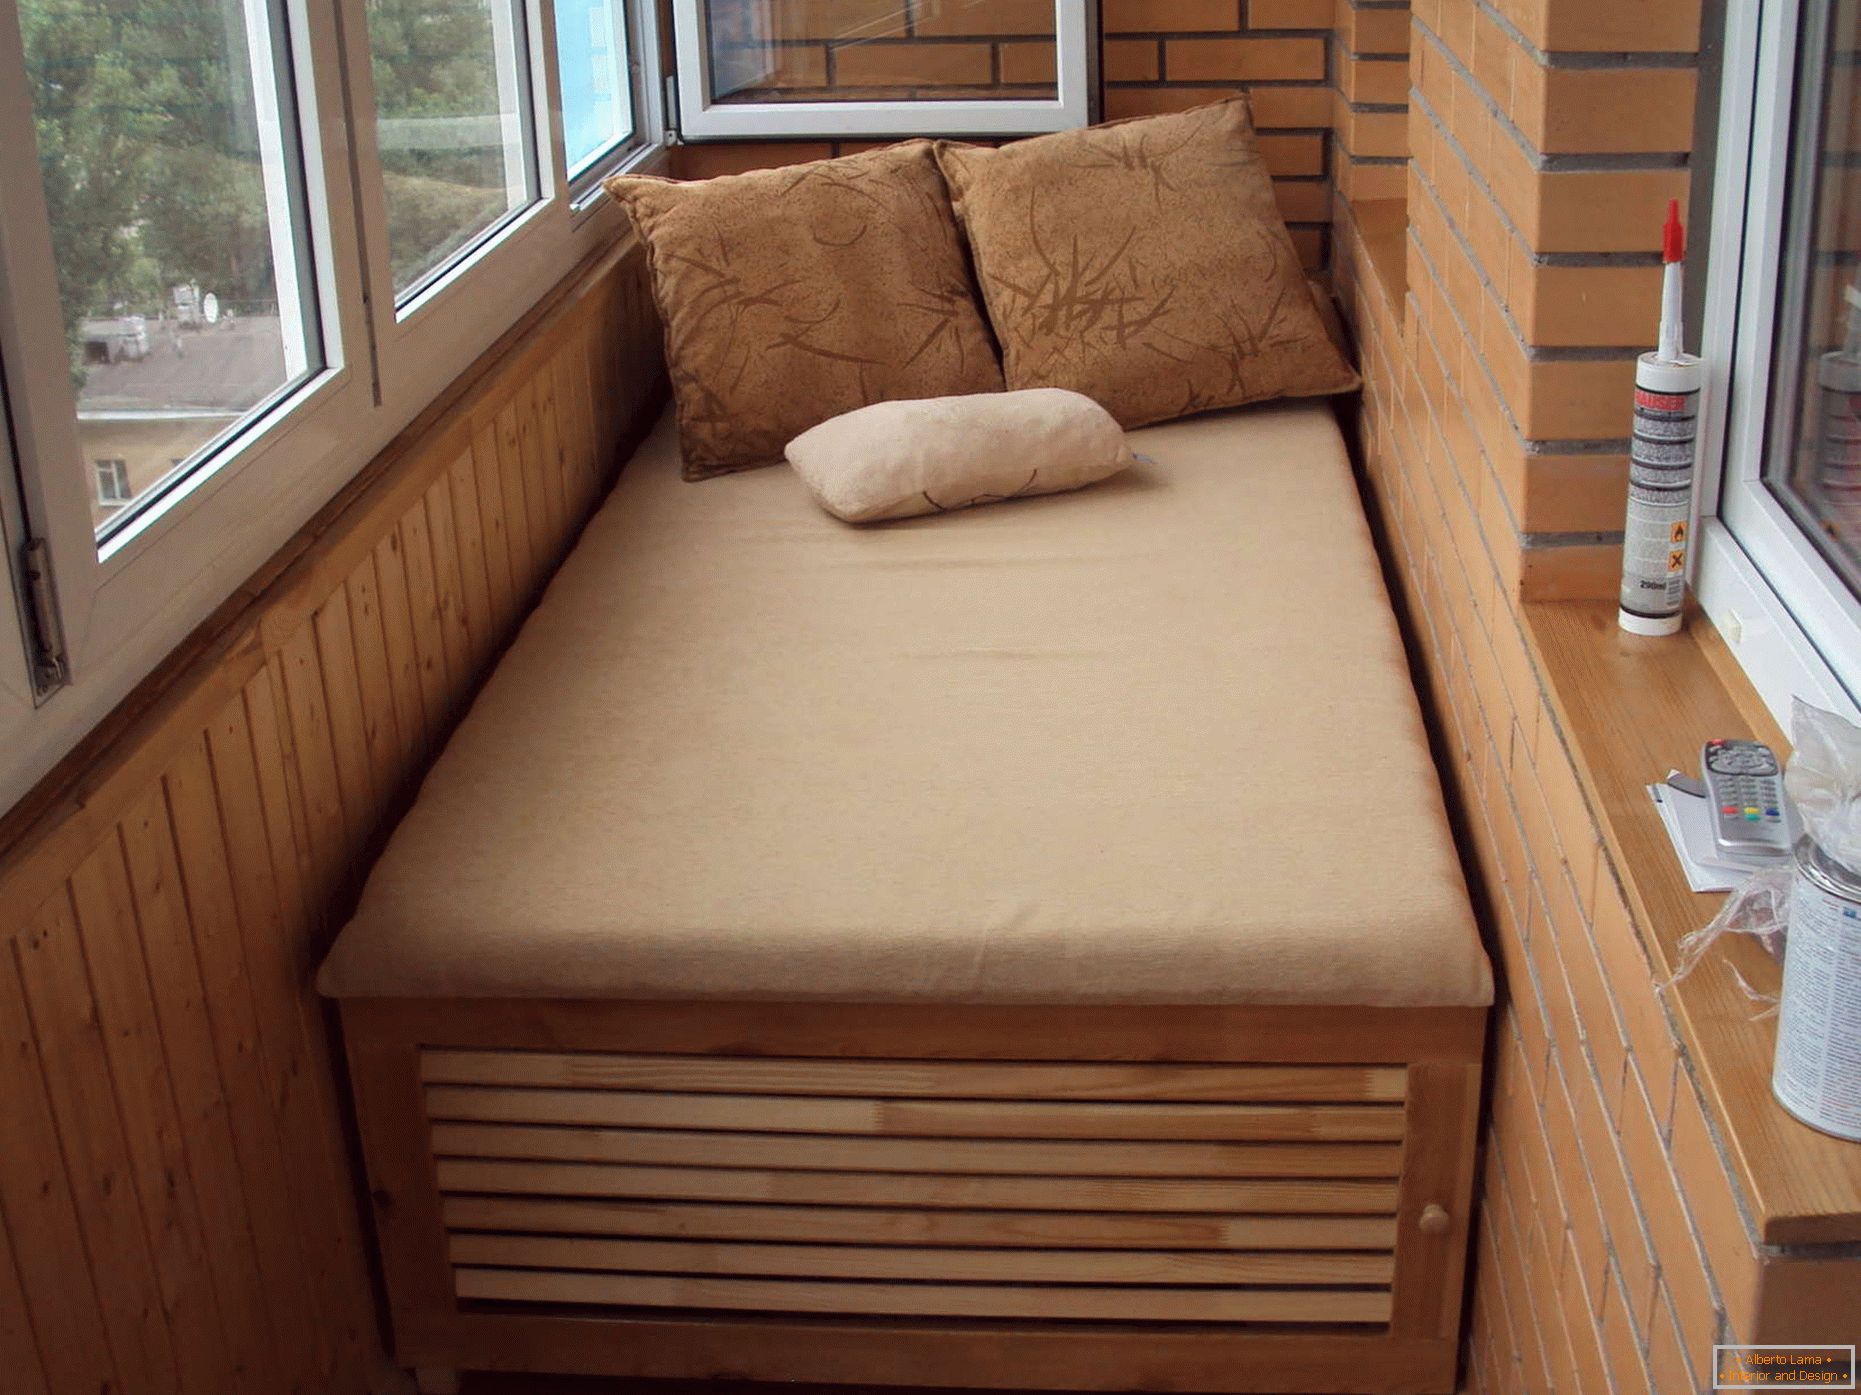 Szafa-łóżko na balkonie